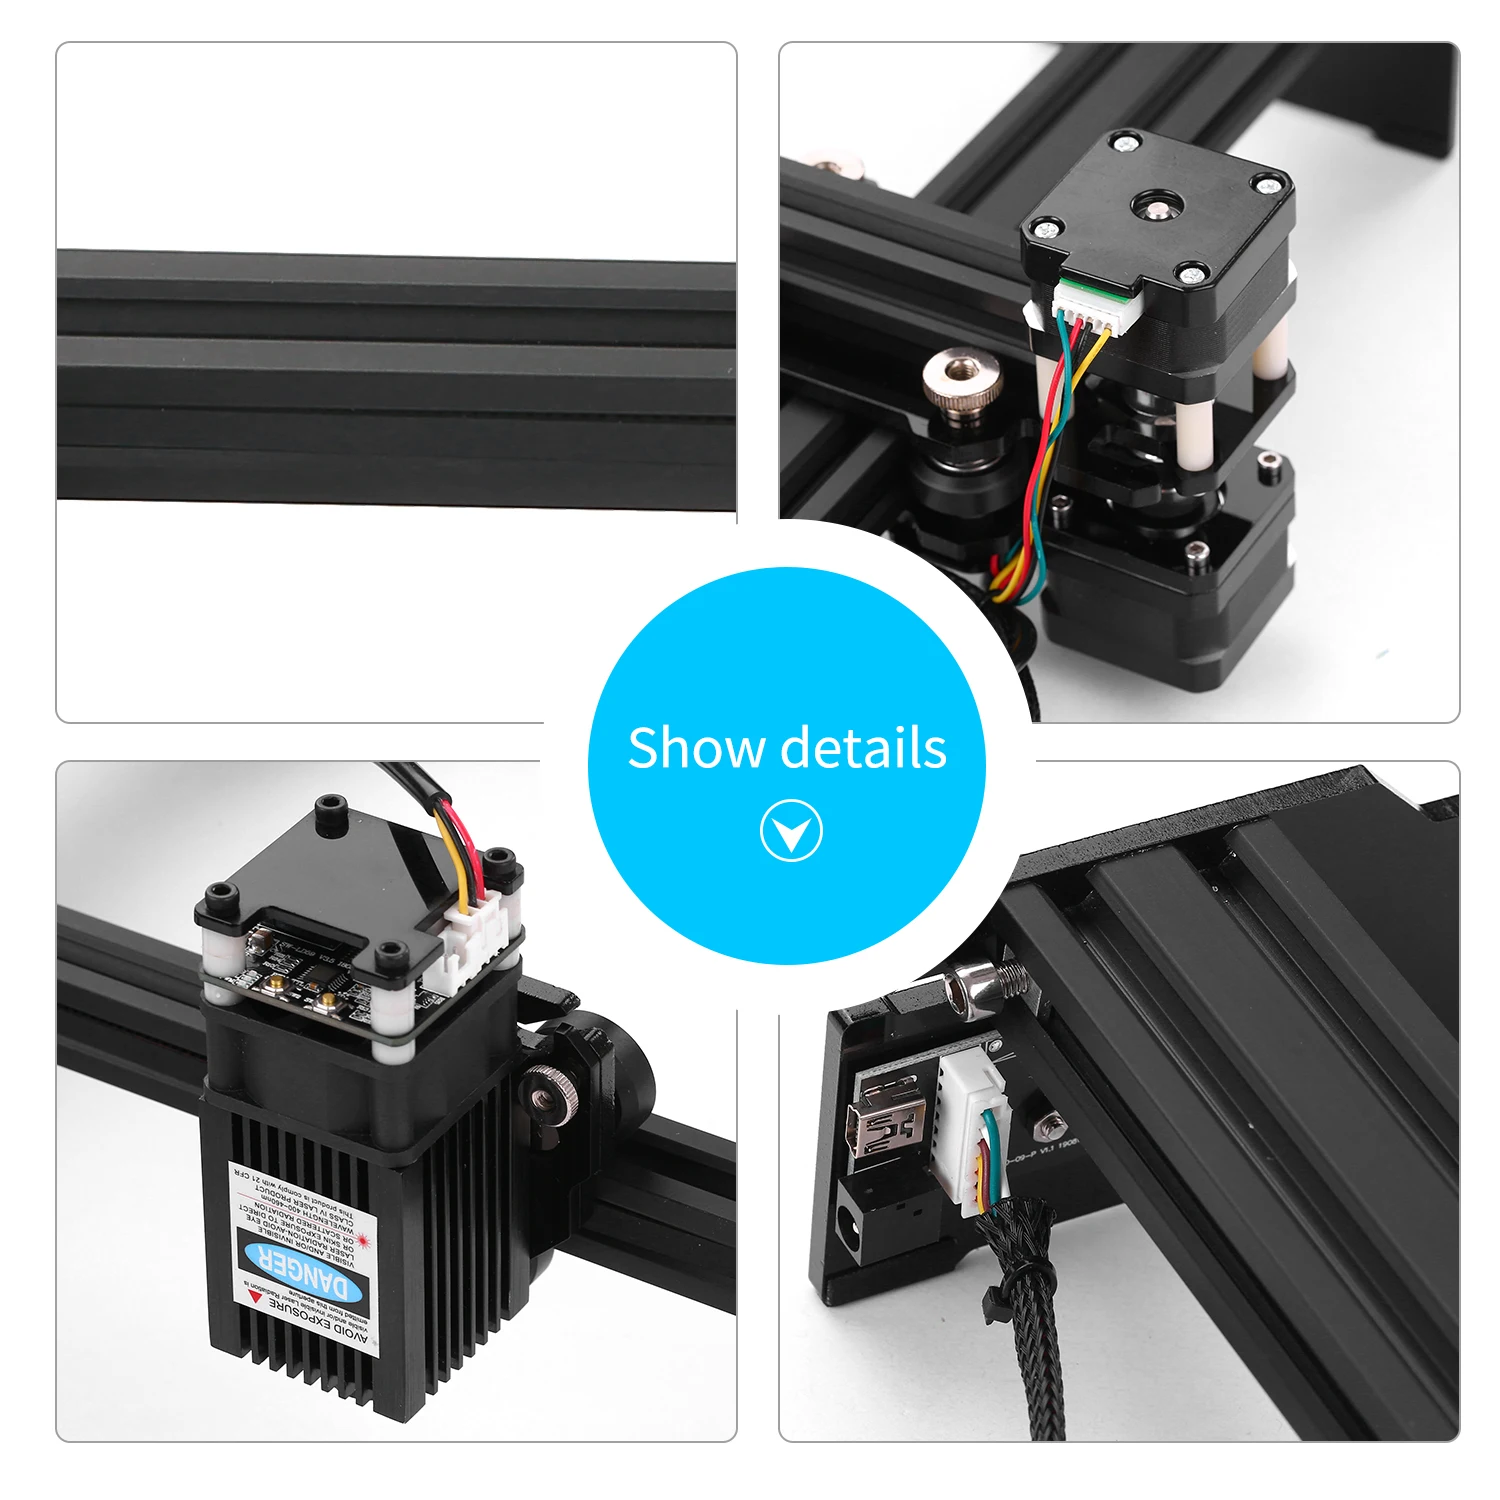 Laser Engraver Printer 500mW Portable Art Craft DIY Mini Engraving Machine